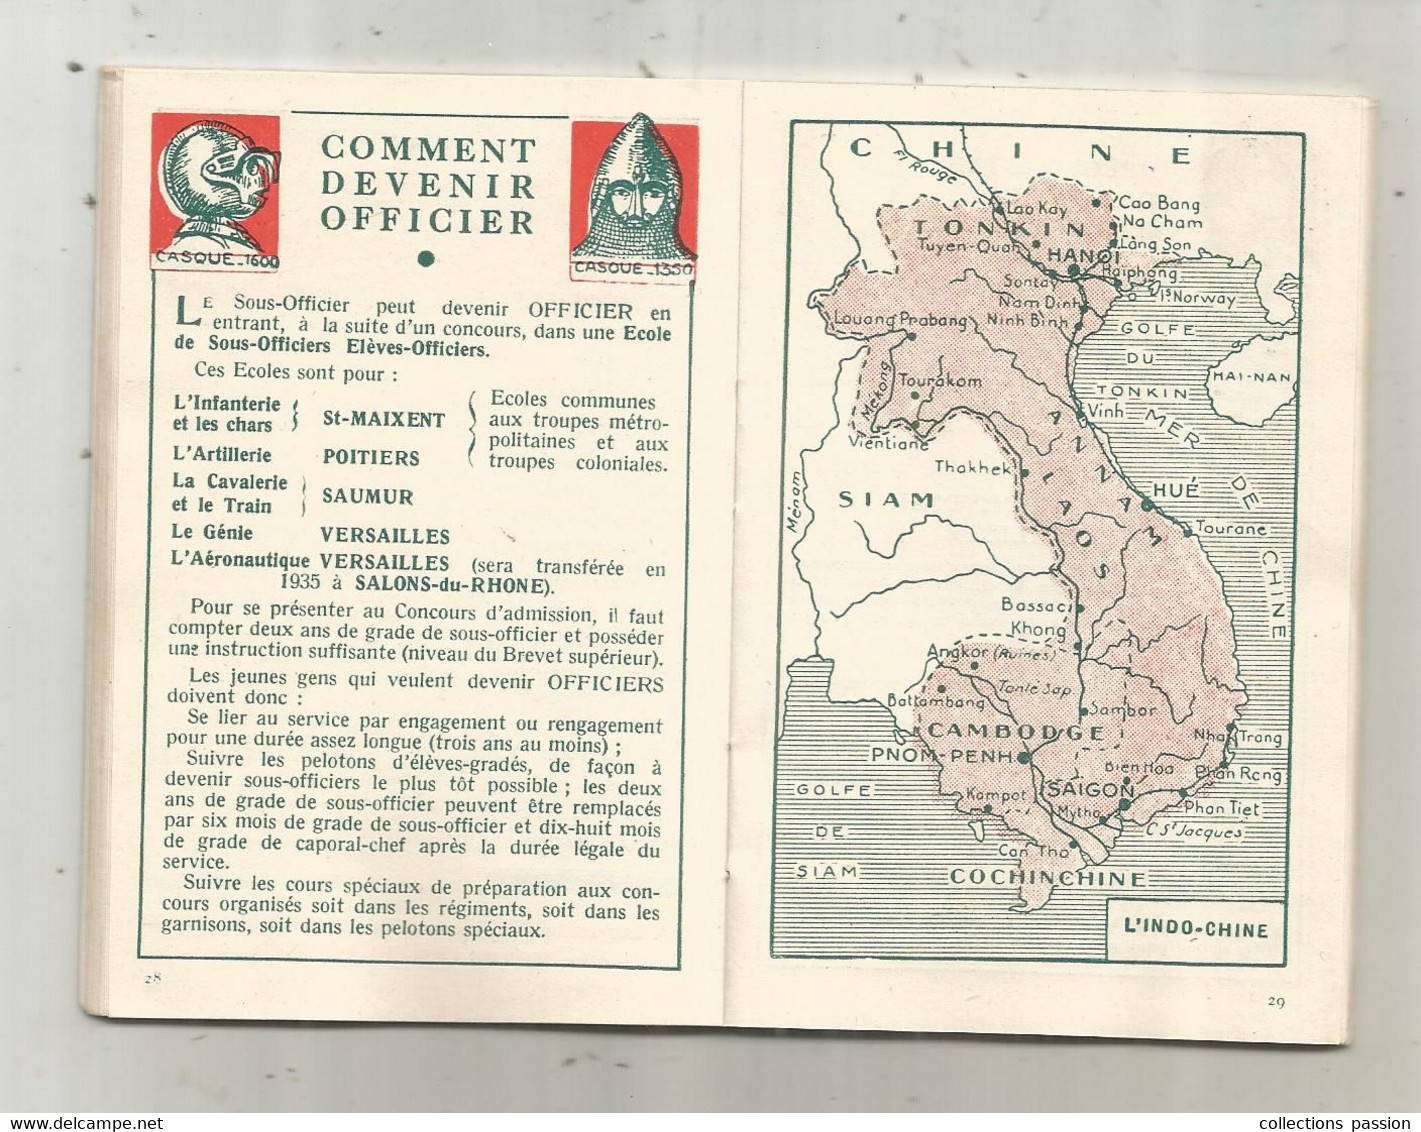 MILITARIA, Calendrier Du Soldat Francais, Oct. 1934-avr. 1936 , 60 Pages ,cartes...., Frais Fr 3.35 E - Documents